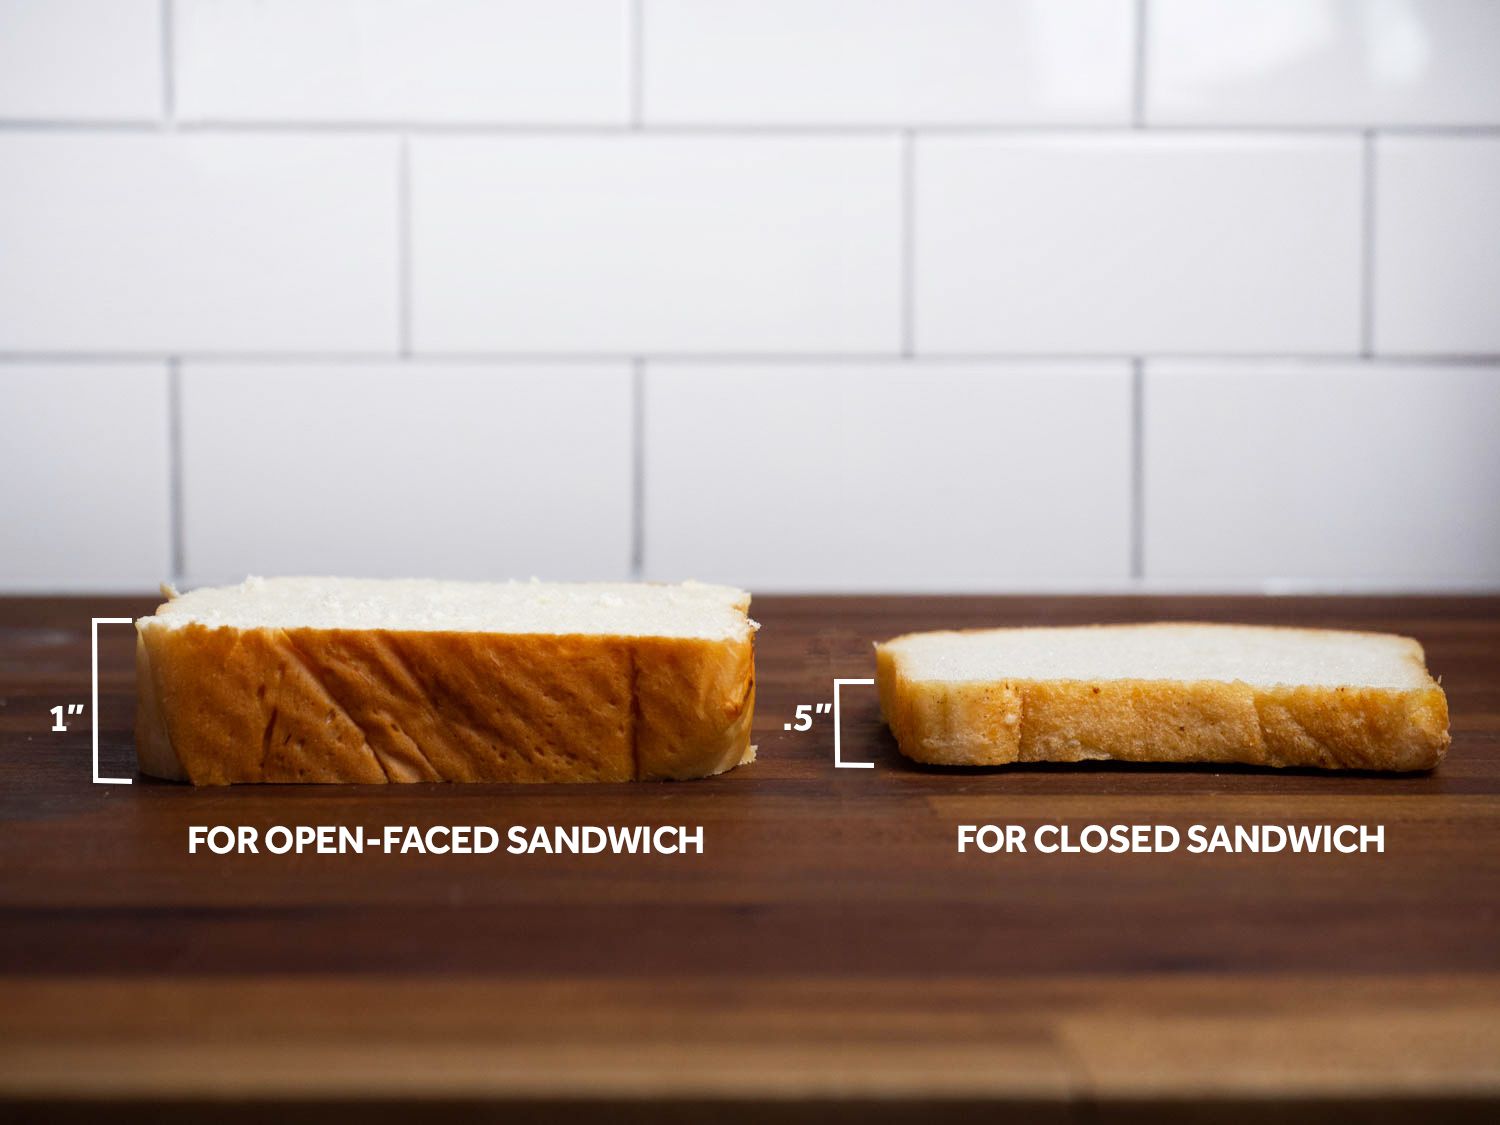 两个面包上的面包和其他的东西一样！两个例子都是个更大的，如果有一种不一样的鸡蛋，像在意大利的地方，或者有一种不同的想法